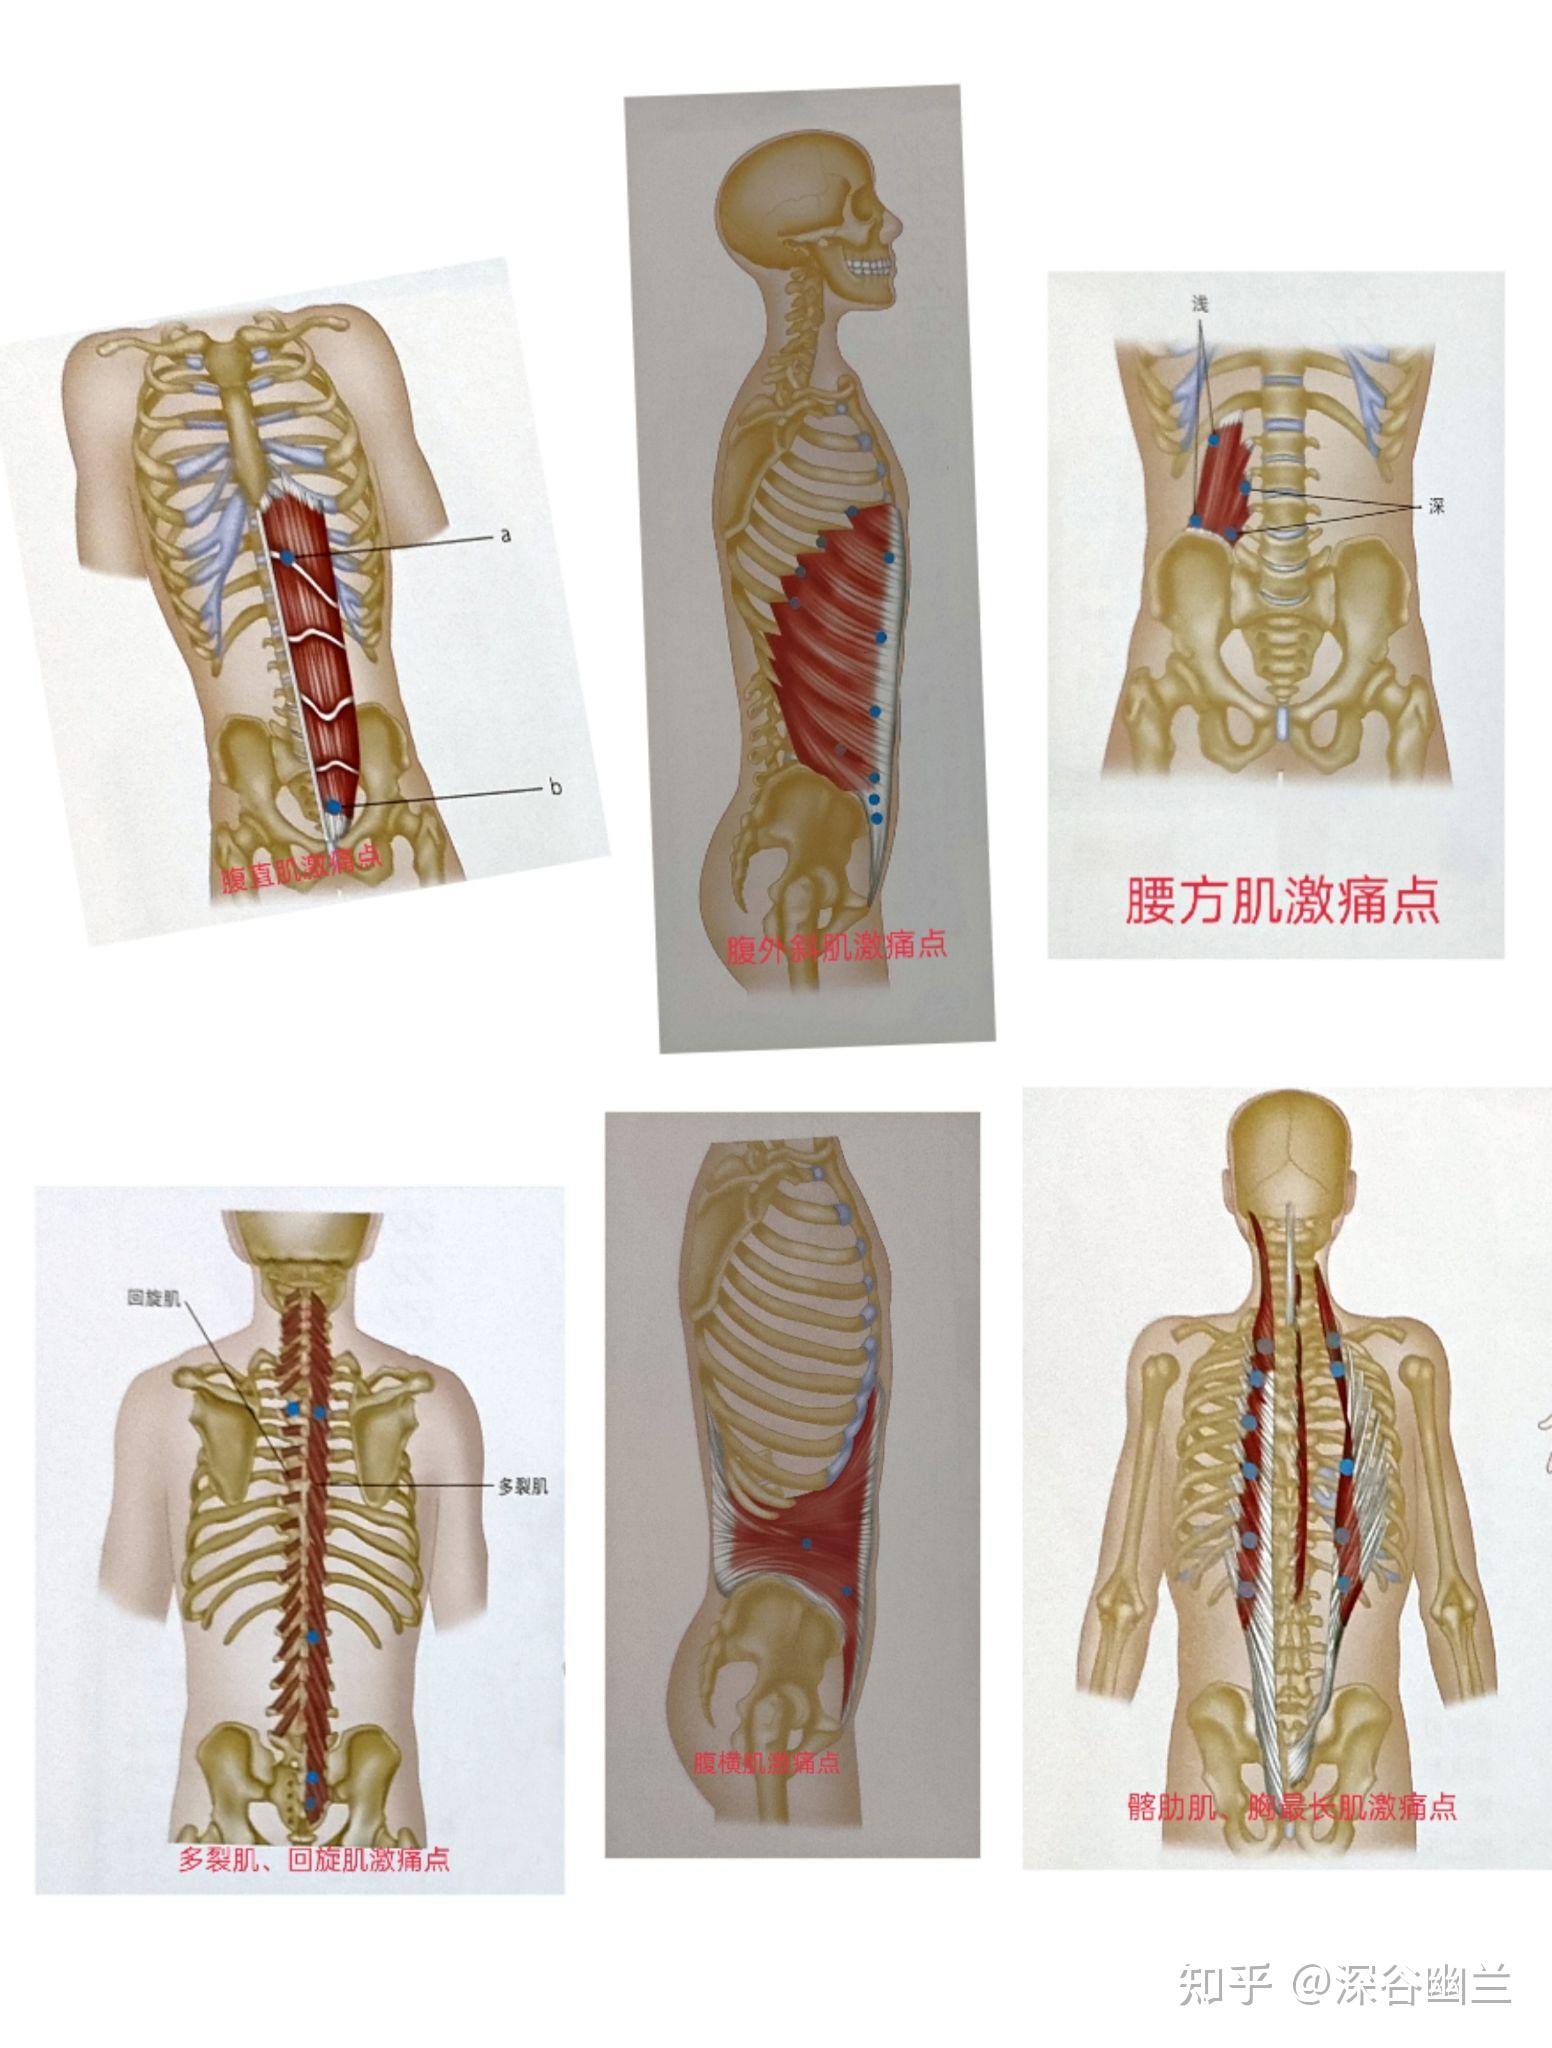 7大腹部穴位一張圖看懂！經痛、腹痛、便祕按對位置更有用。 | 今健康 | LINE TODAY